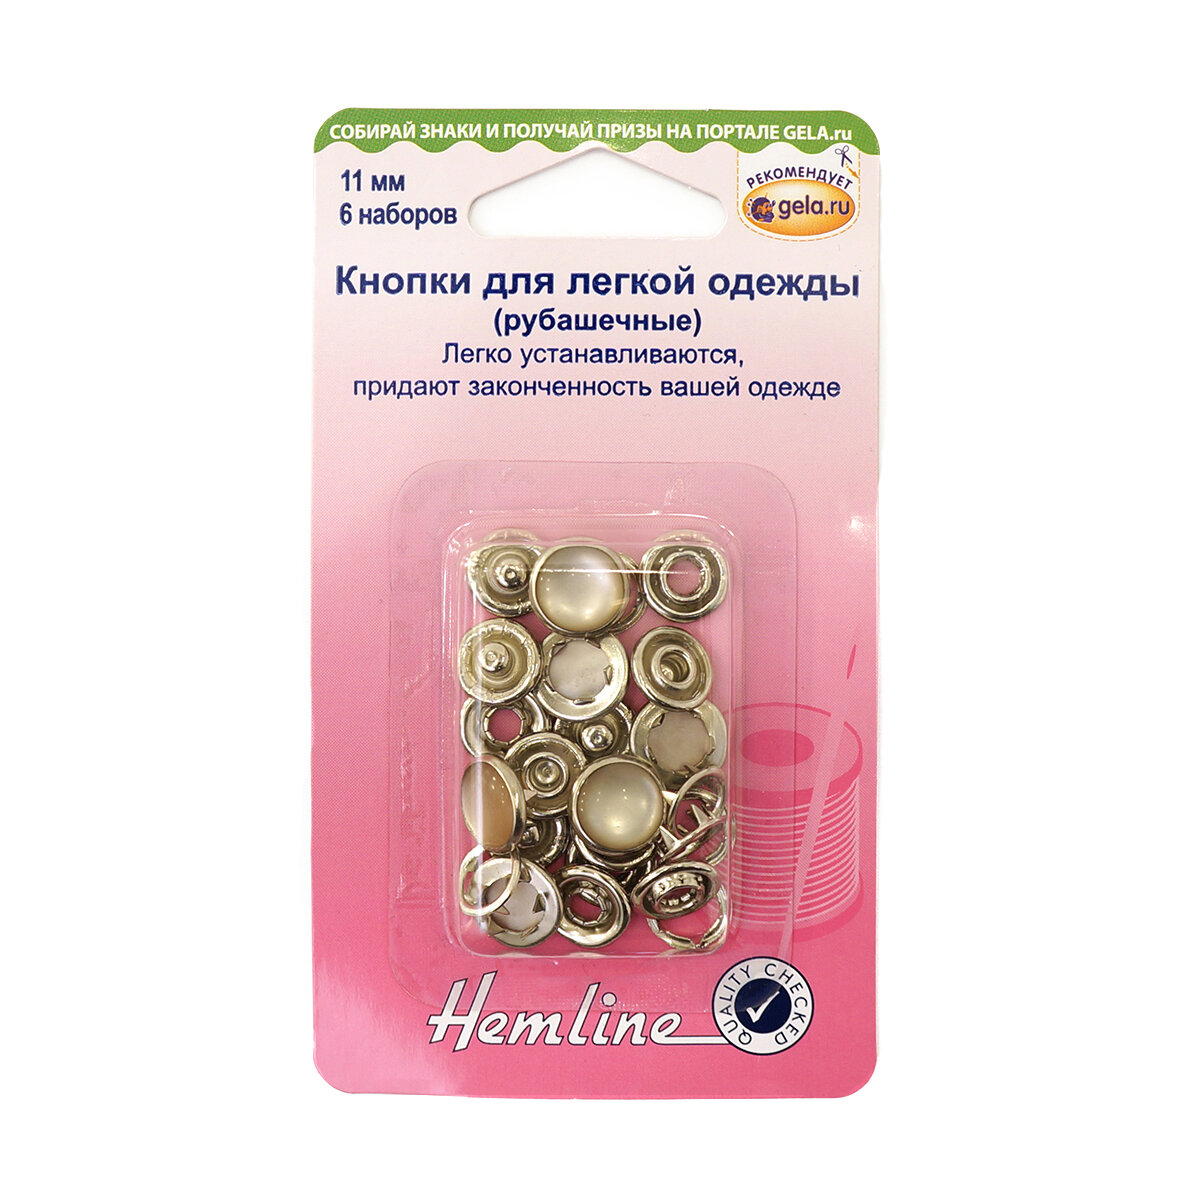 Кнопки для легкой одежды (рубашечные) с глазком розово-серый перламутр 11 мм HEMLINE 440. GYPL